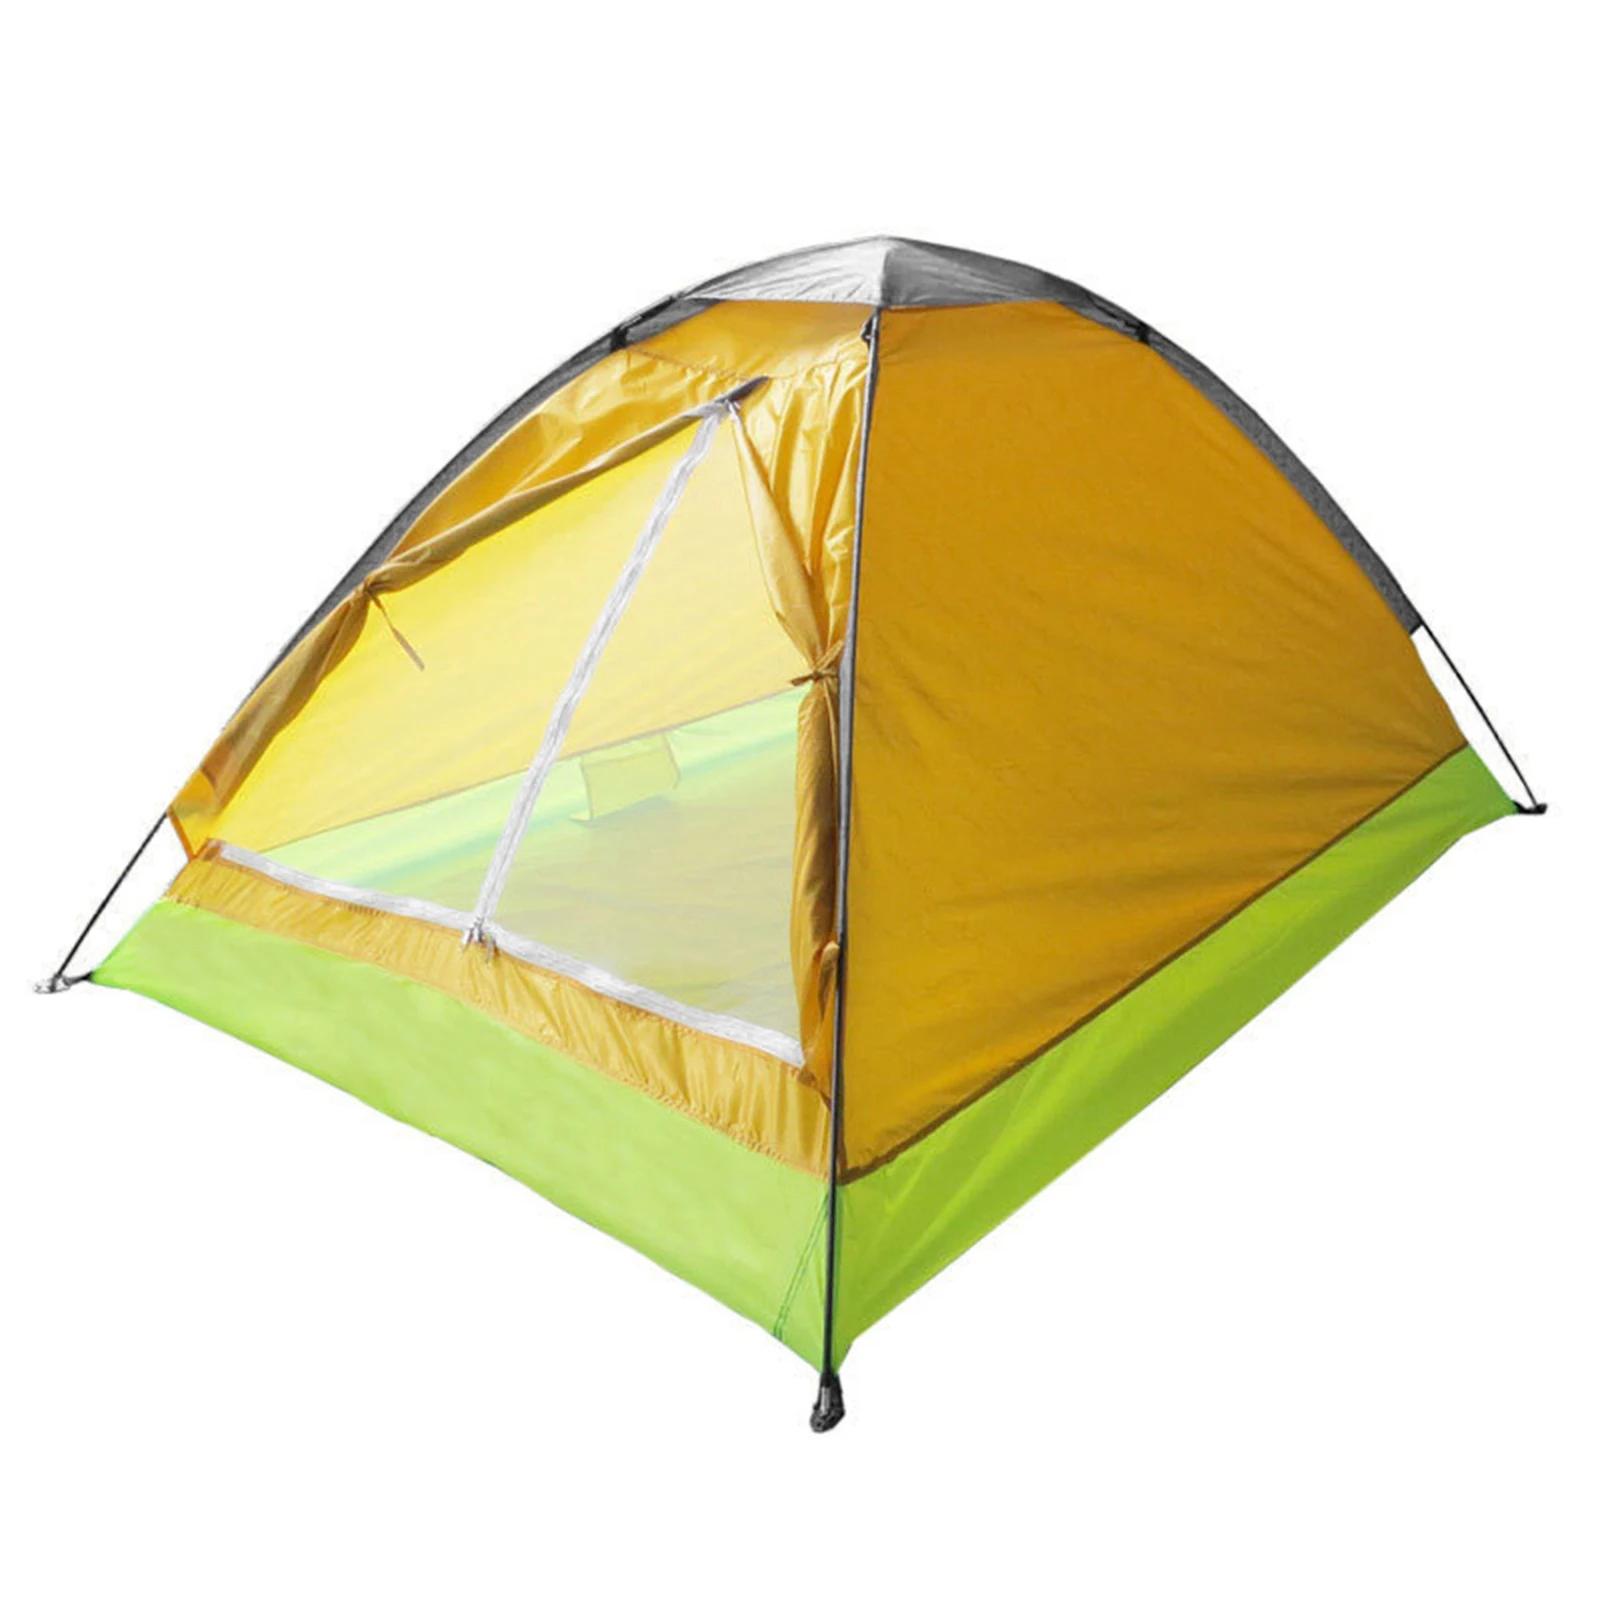 경량 야외 캠핑 텐트, 레인 플라이 운반 가방 포함, 2 인용 배낭 텐트, 200x140x100cm